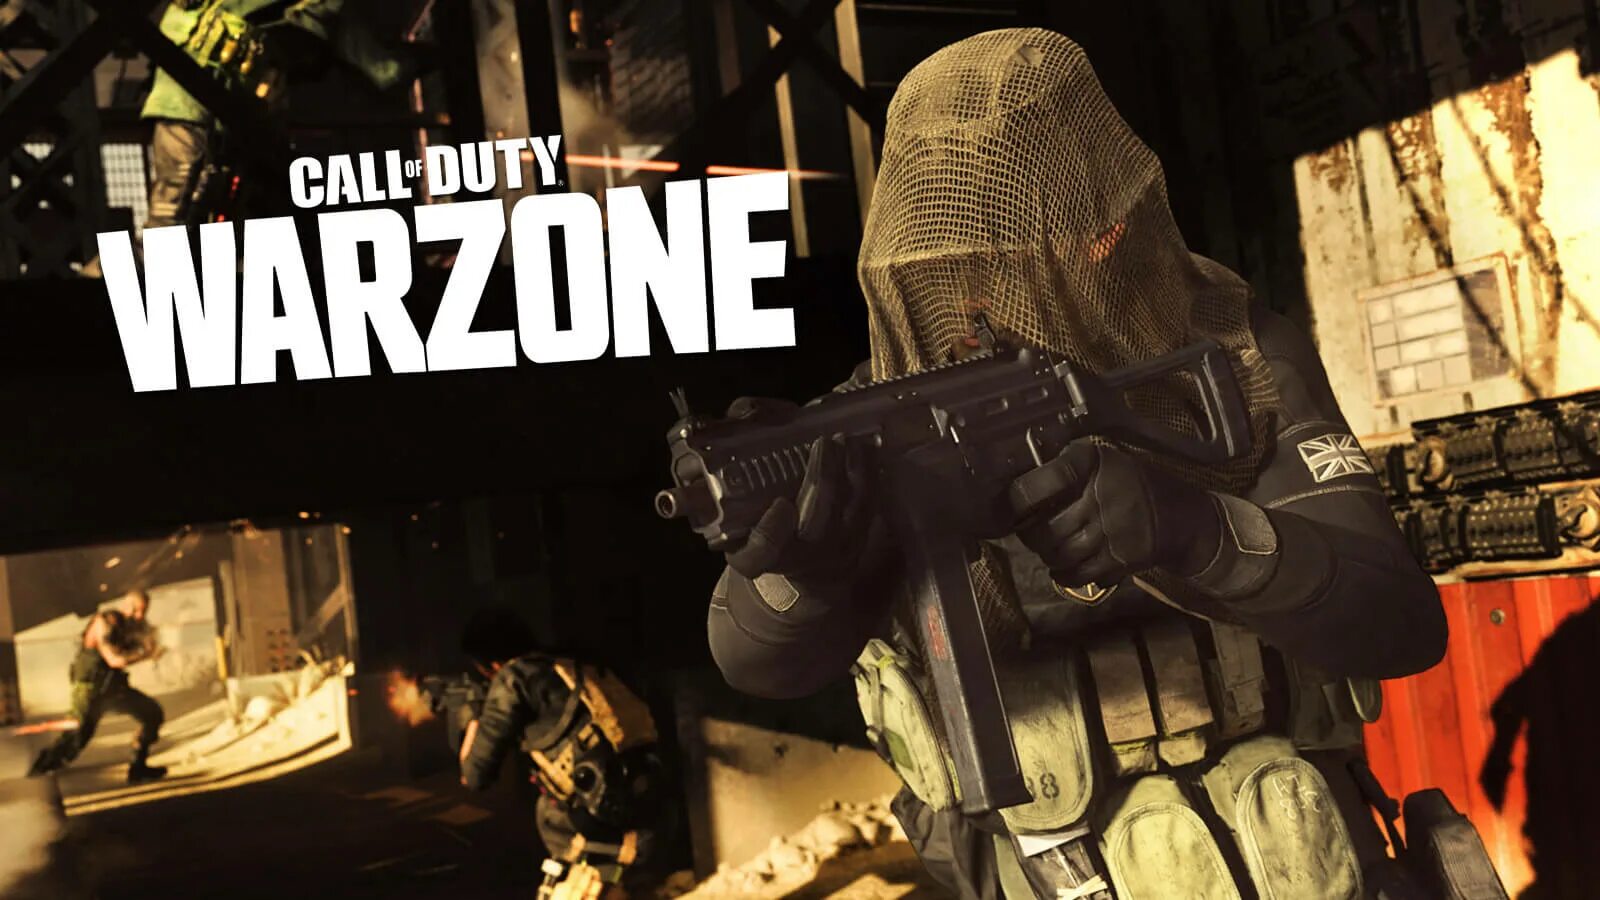 Call of Duty Warzone. Call of Duty Warzone 2. Call of Duty Warzone 2 стрим. Варзоне Call of Duty. Call of duty warzone графика